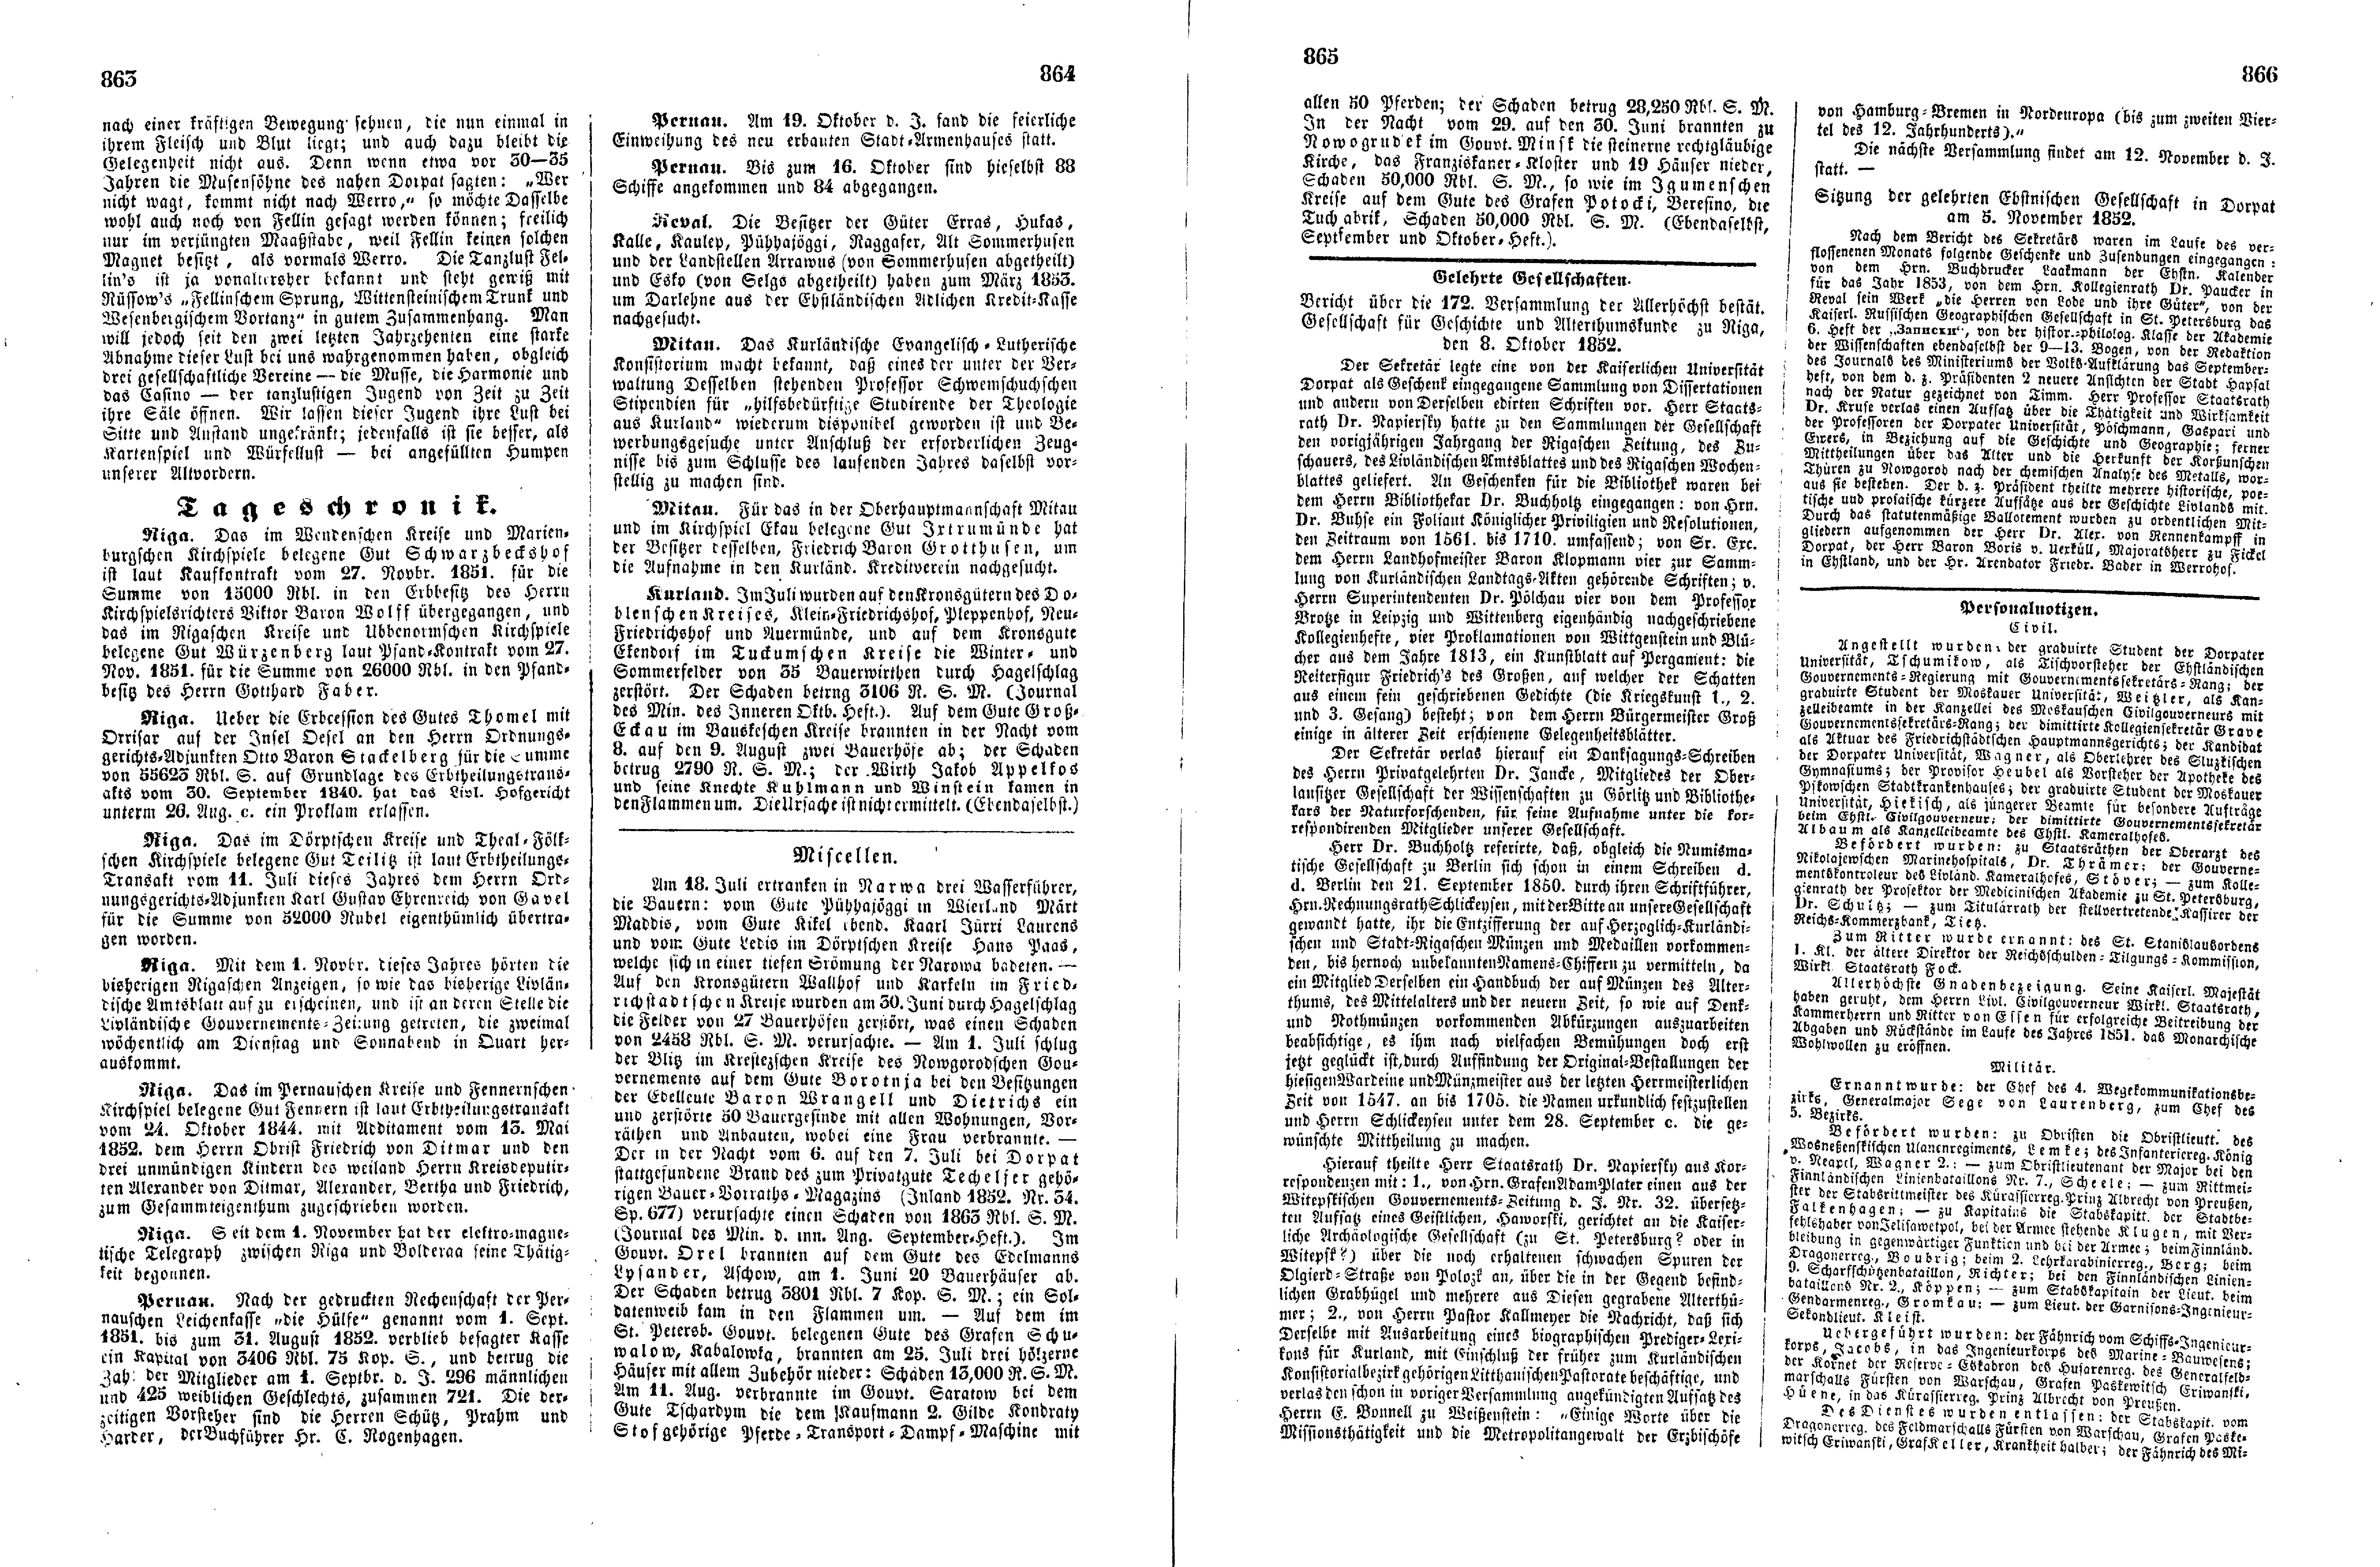 Das Inland [17] (1852) | 221. (863-866) Основной текст